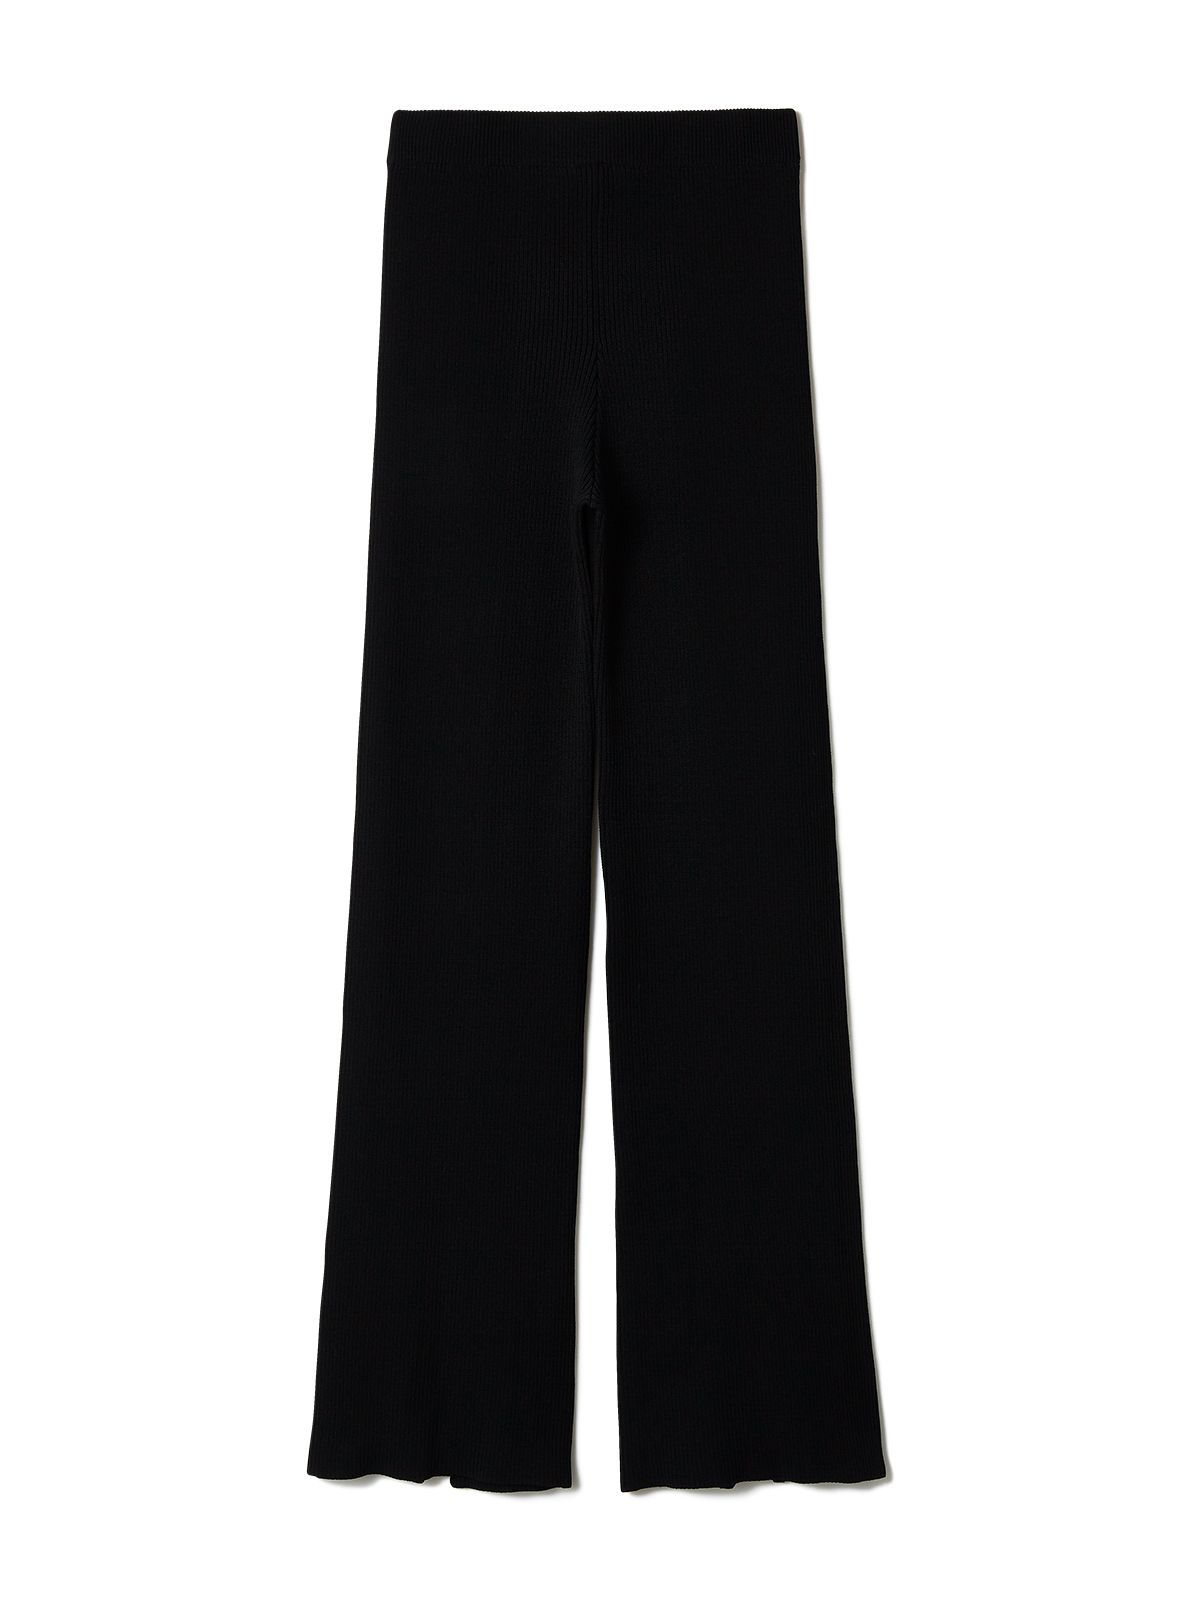 slit knit trousers / black